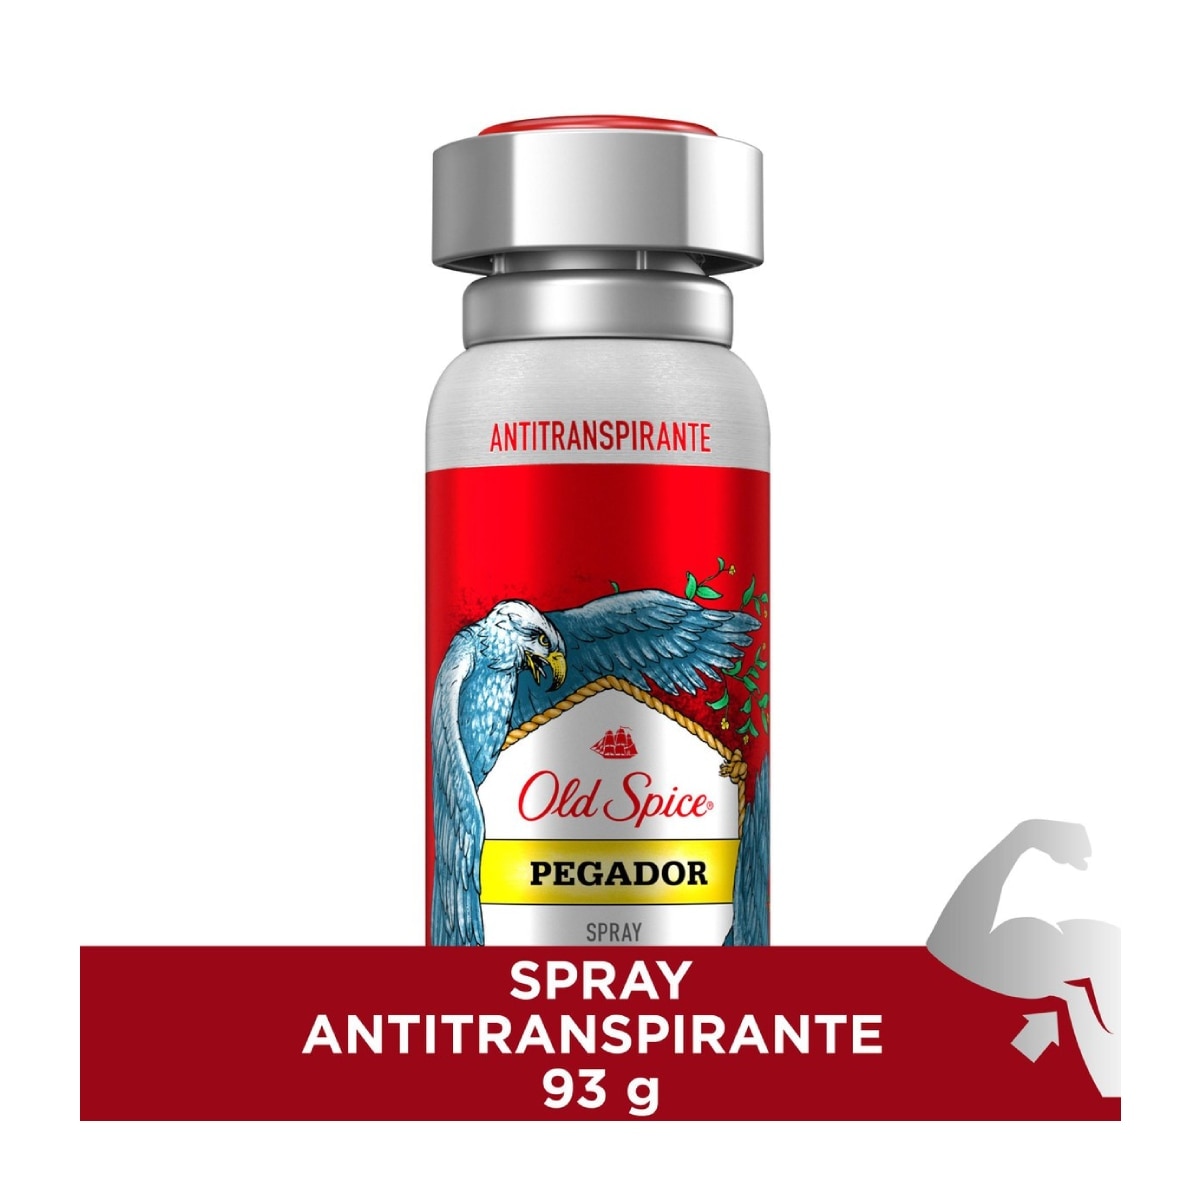 Antitranspirante Spray Old Spice Pegador 150ml